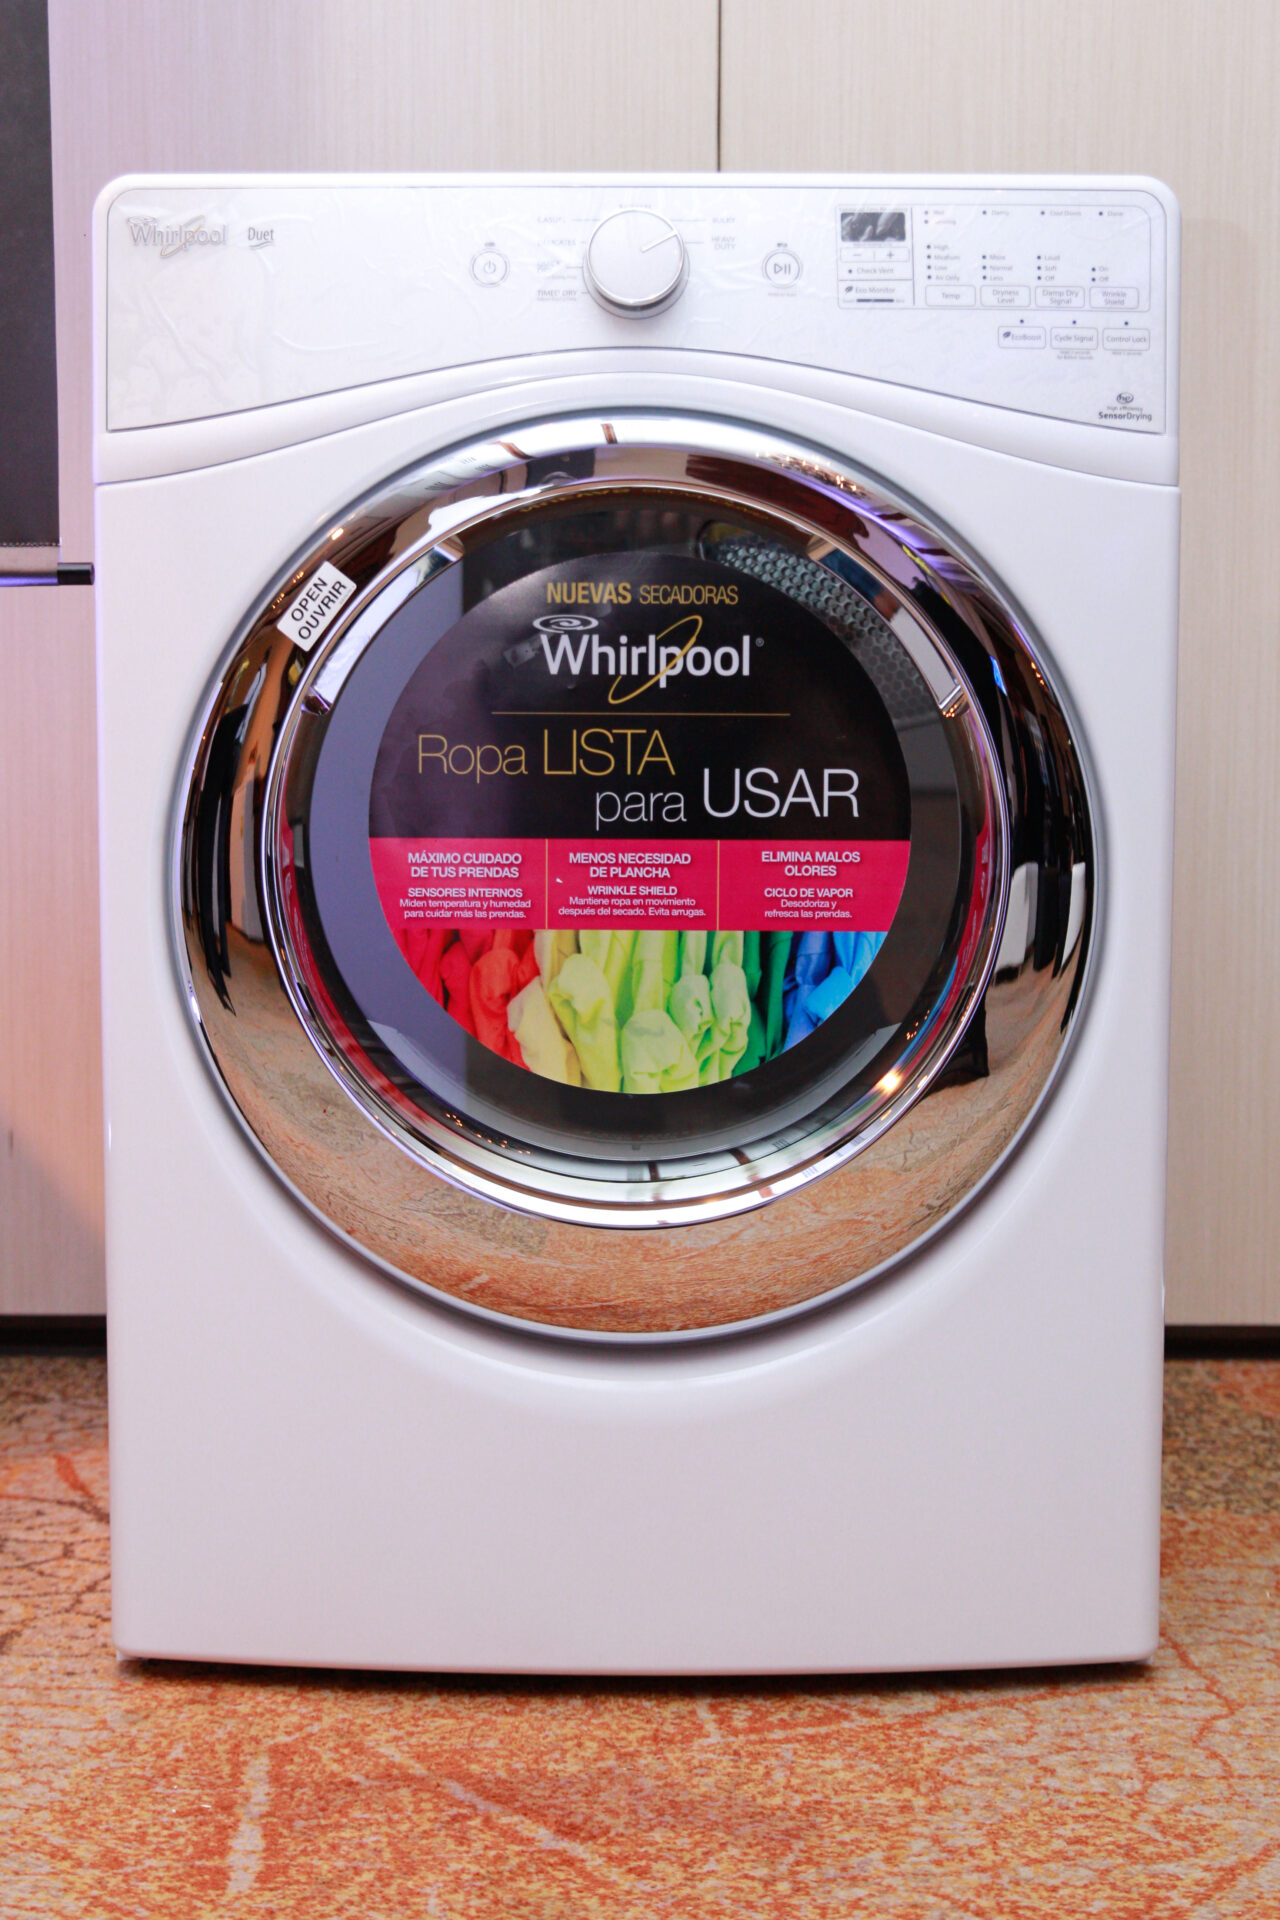 Llega nueva generación en lavandería con tecnología única